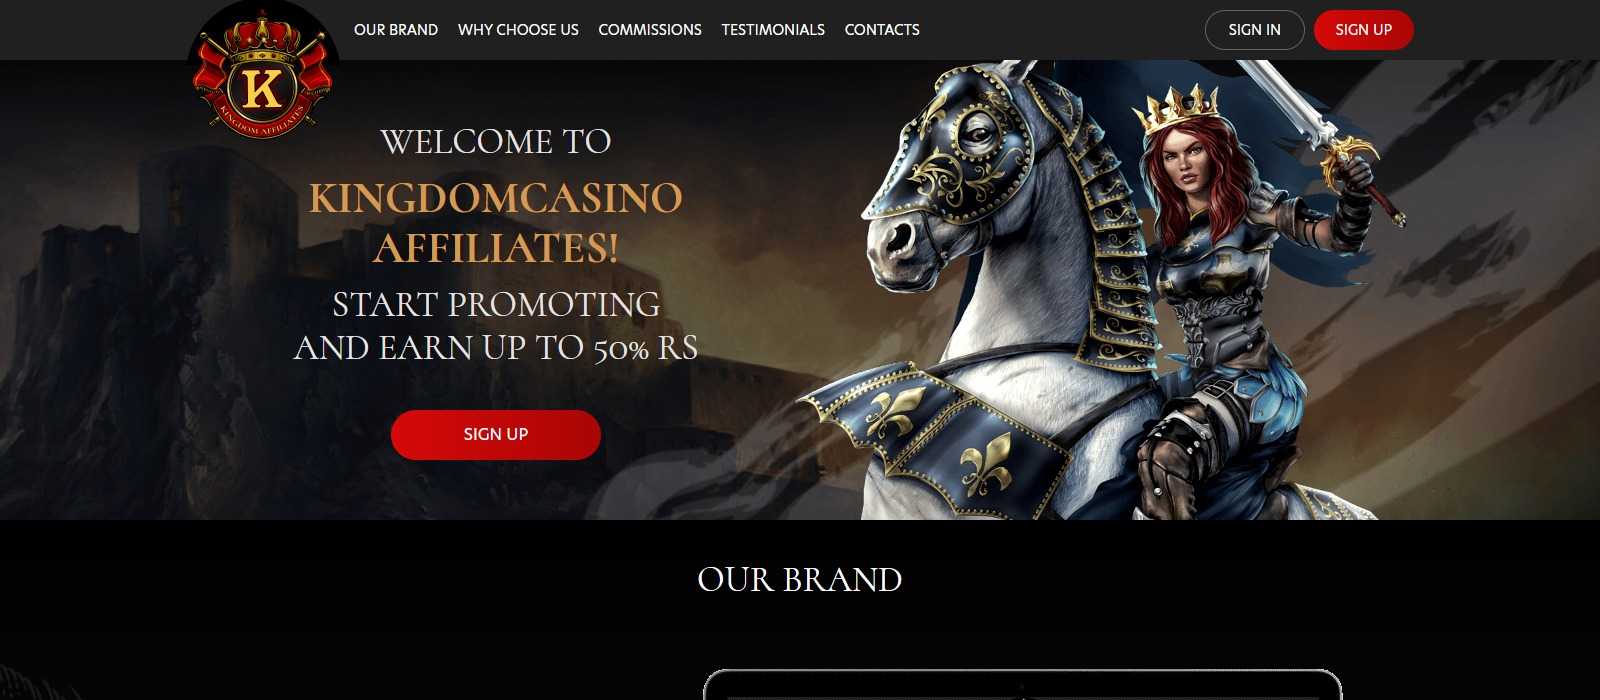 Kingdom Casino Affiliate Program Review: 30% - 50% Recurring Revenue Share